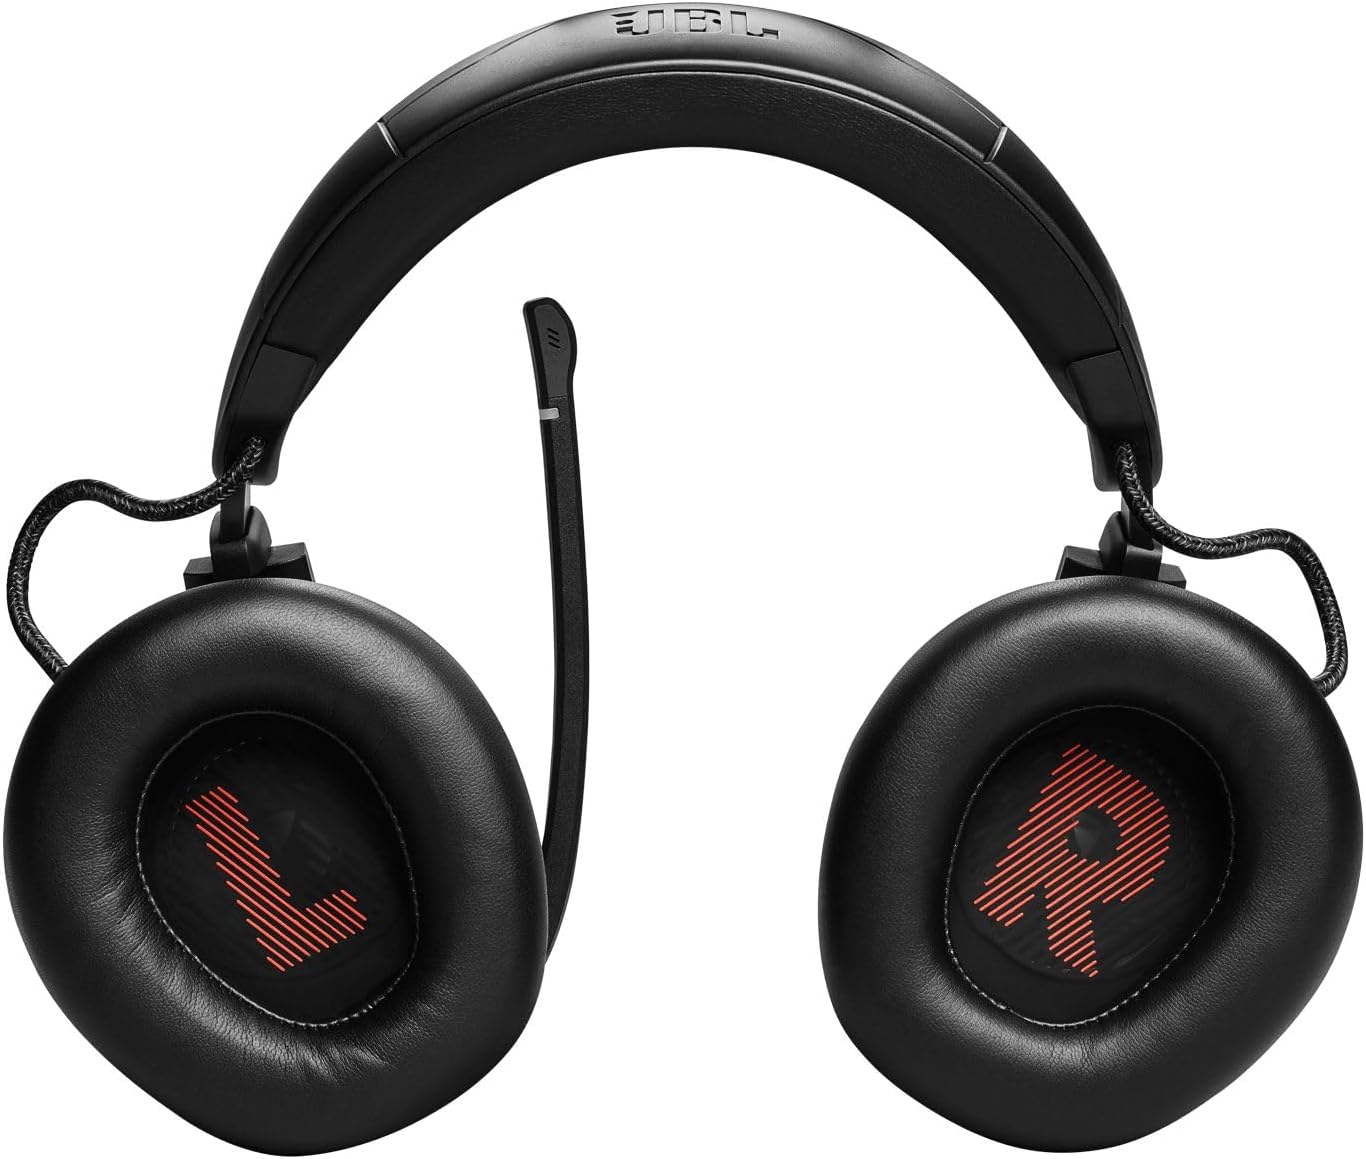 JBL Quantum 910 koptelefoon in zwart - Draadloze Bluetooth gaming-headset met ruisonderdrukking, afspeel- en oplaadfuncties en boommicrofoon